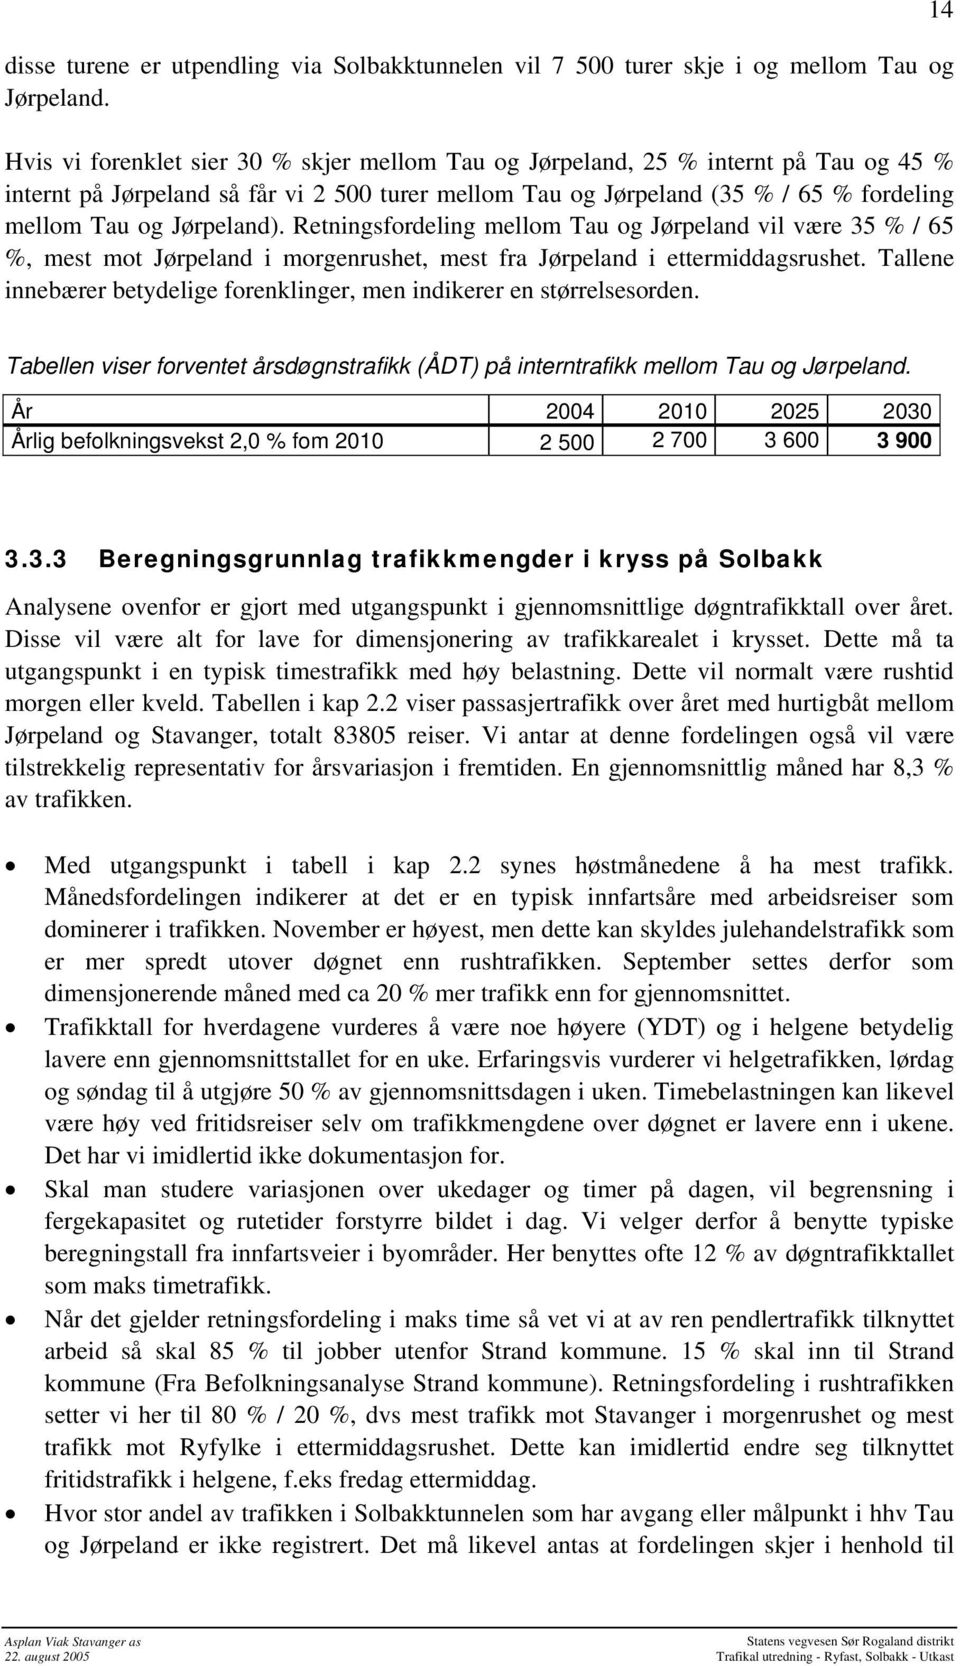 Jørpeland). Retningsfordeling mellom Tau og Jørpeland vil være 35 % / 65 %, mest mot Jørpeland i morgenrushet, mest fra Jørpeland i ettermiddagsrushet.